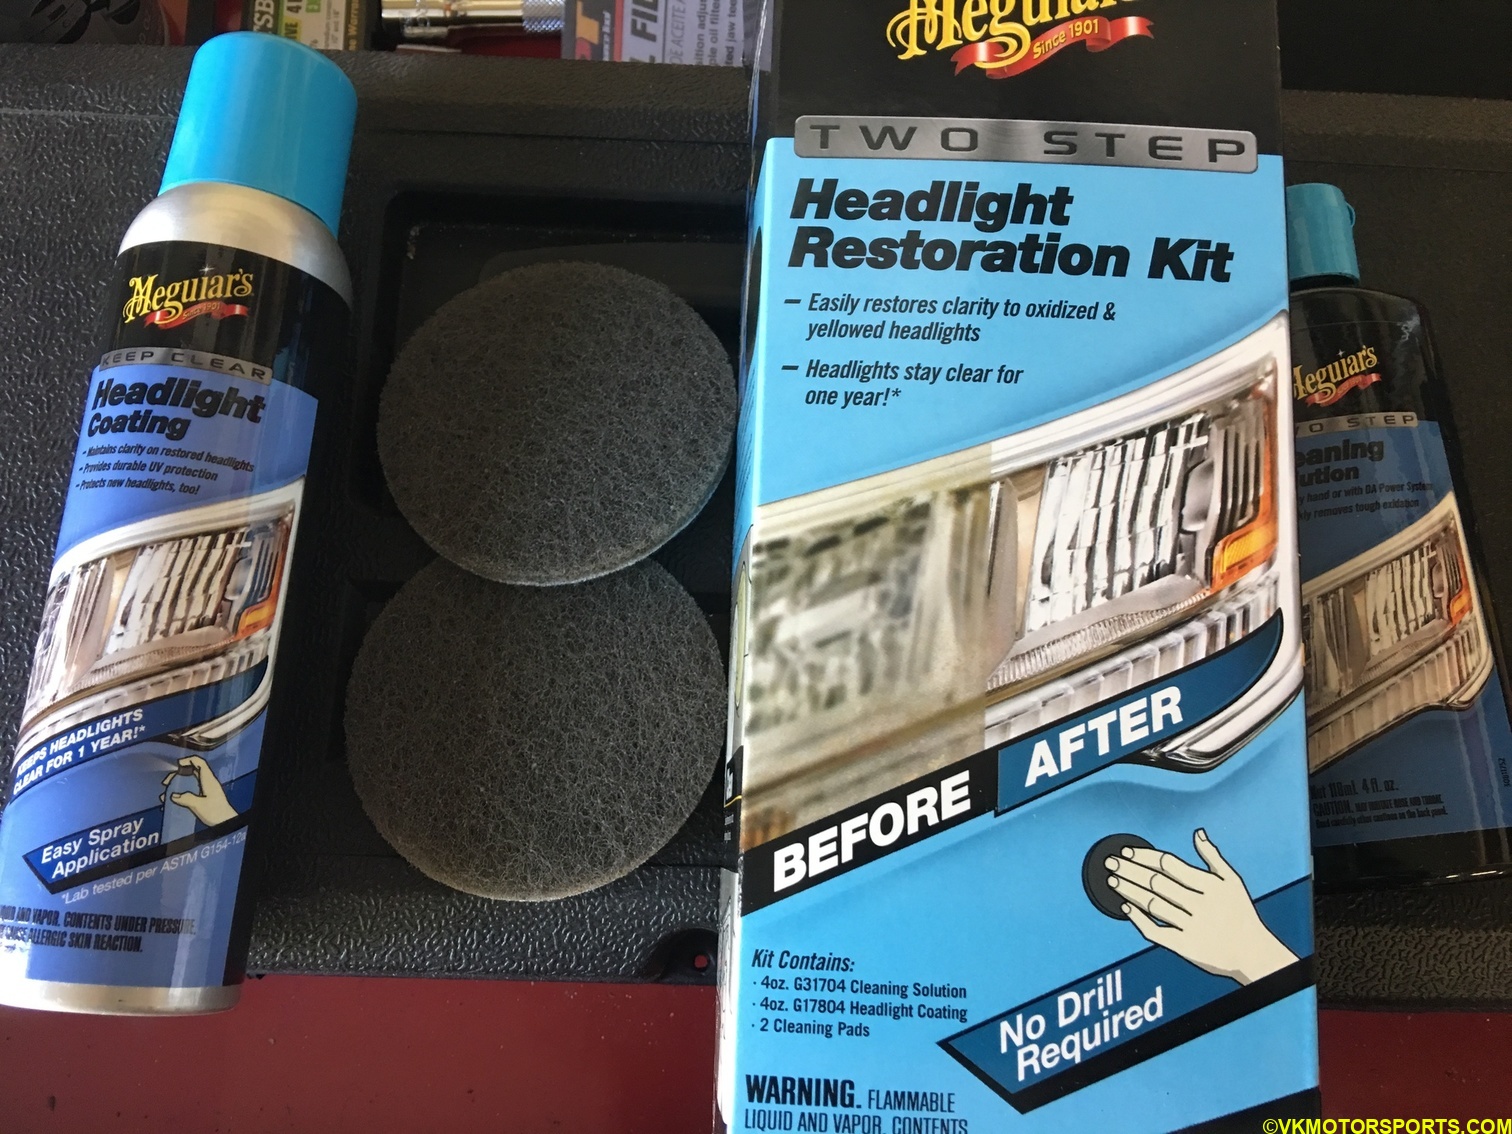 Meguiar's headlight restoration kit